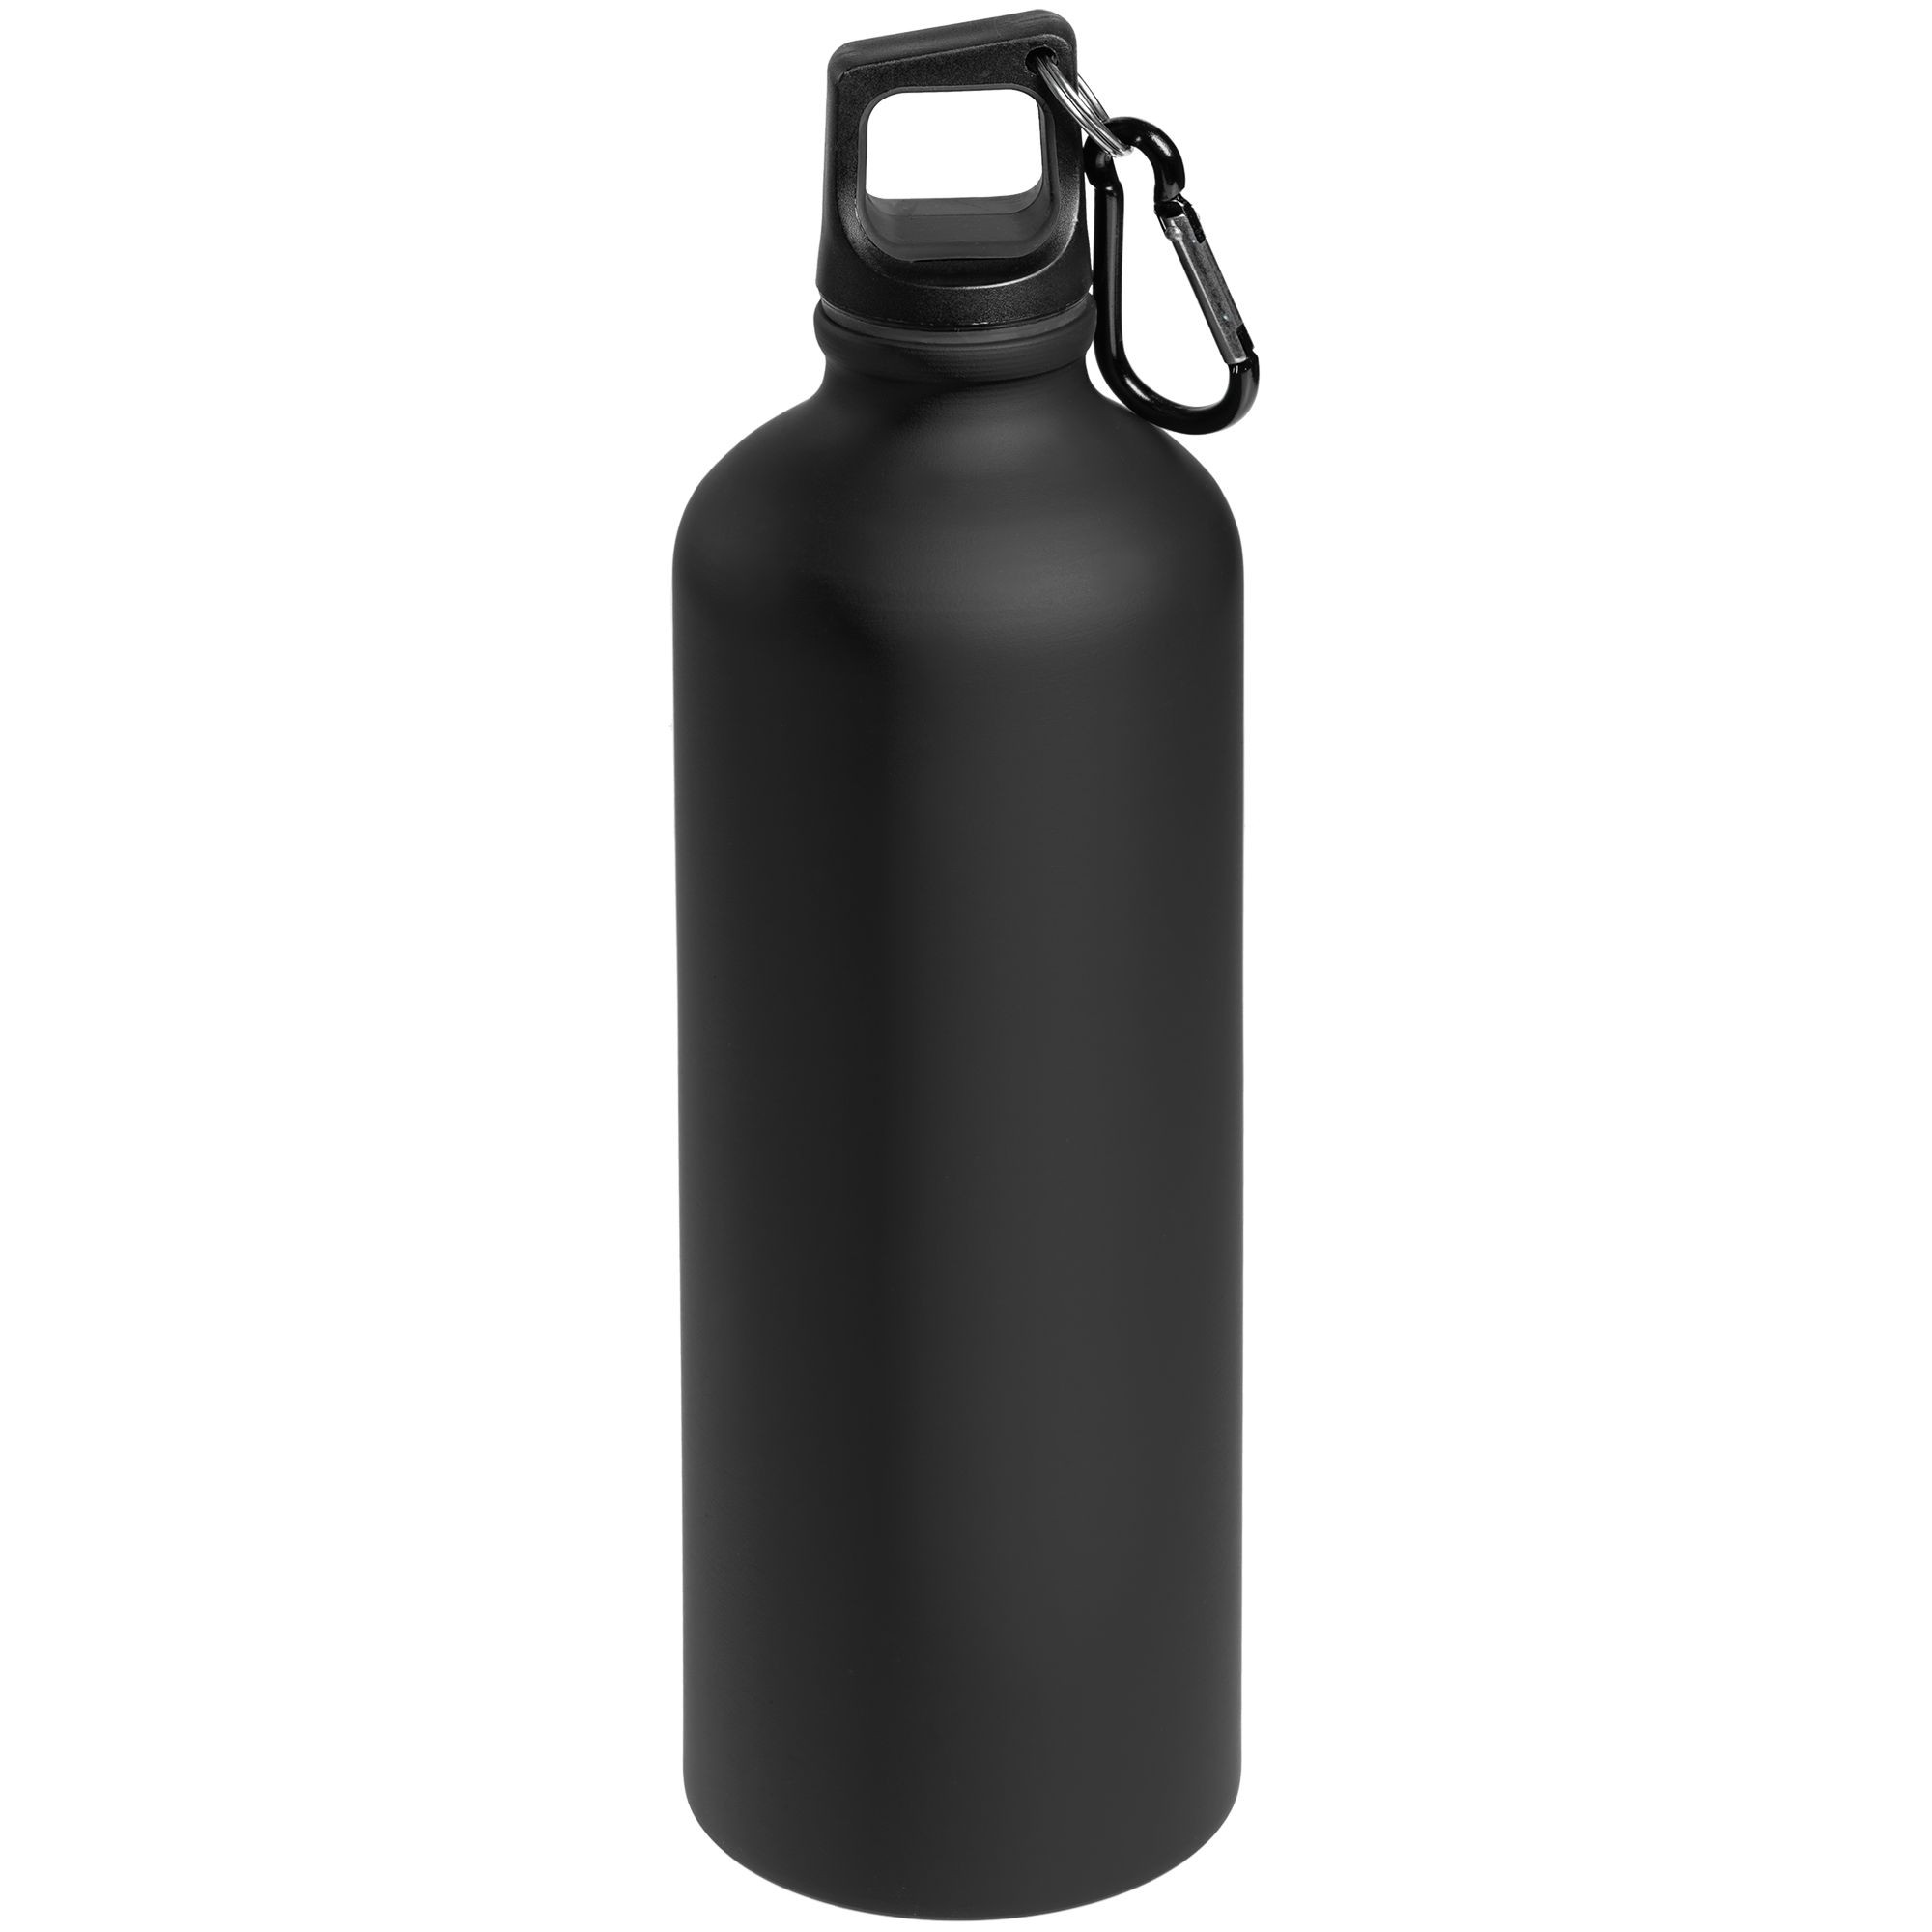 Бутылка для воды сталь. Бутылка для воды. Бутылочка для воды черная. Металлическая бутылка. Спортивная бутылка черная.